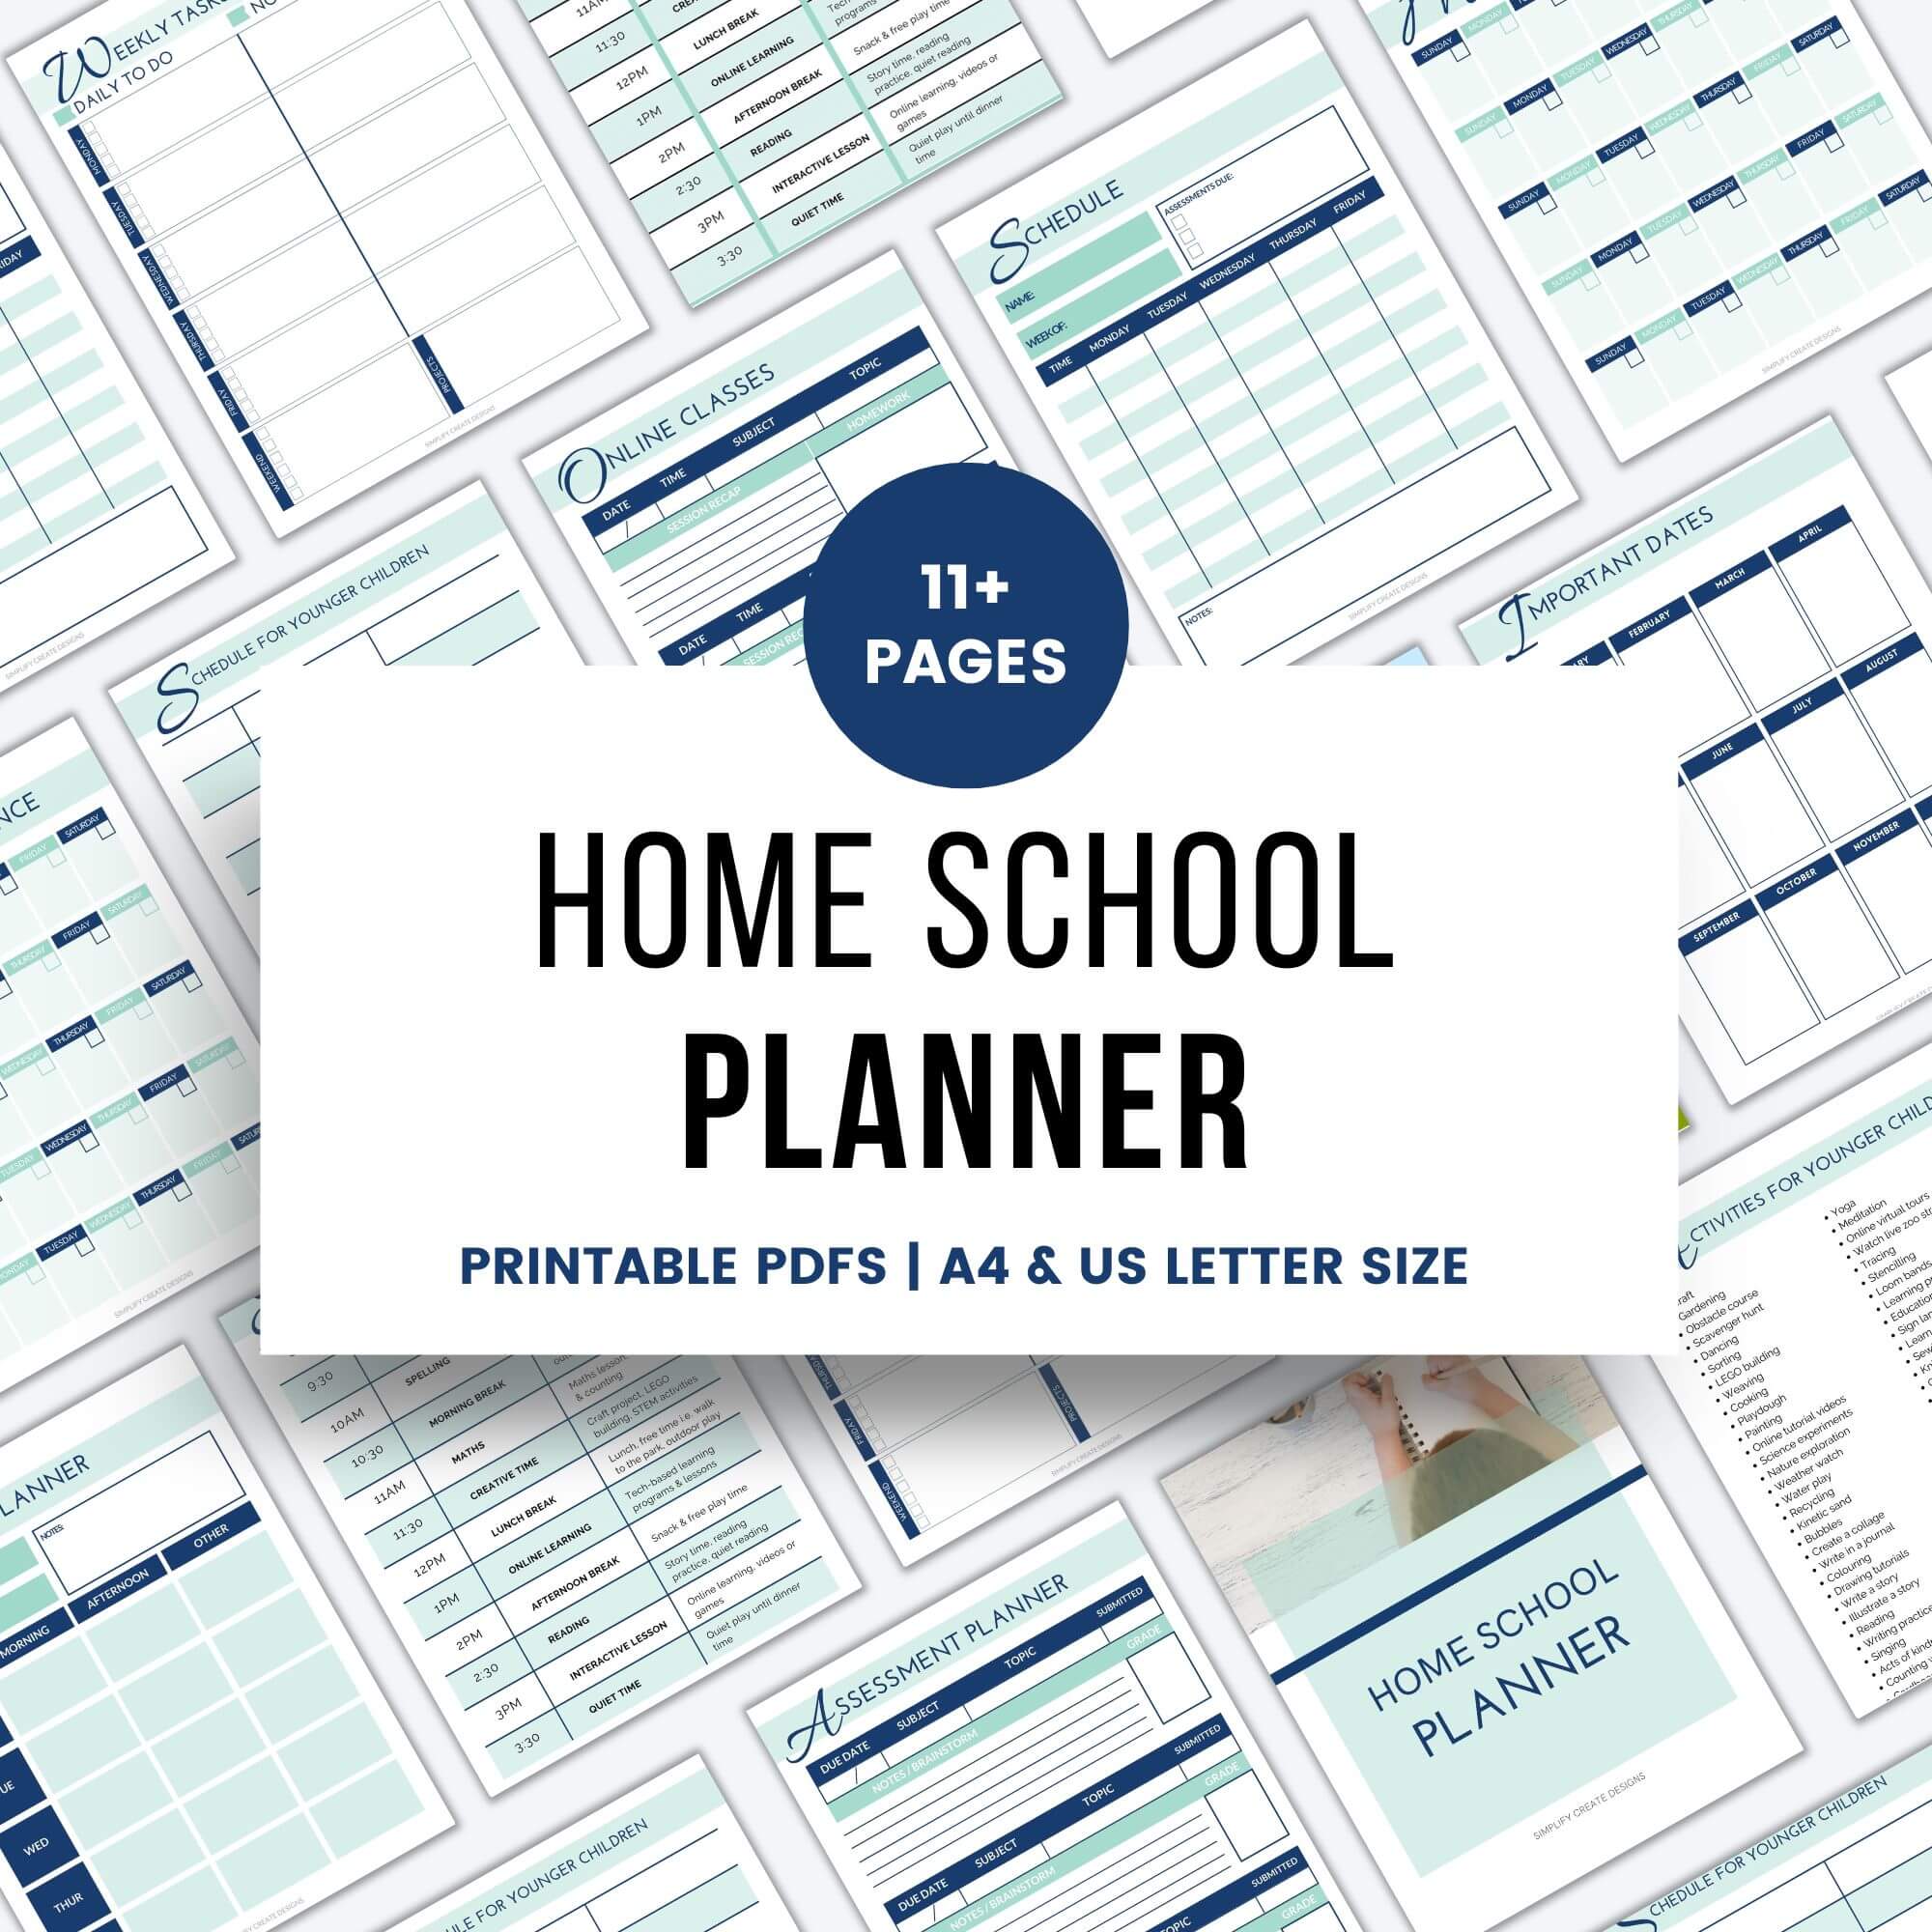 Home school planner